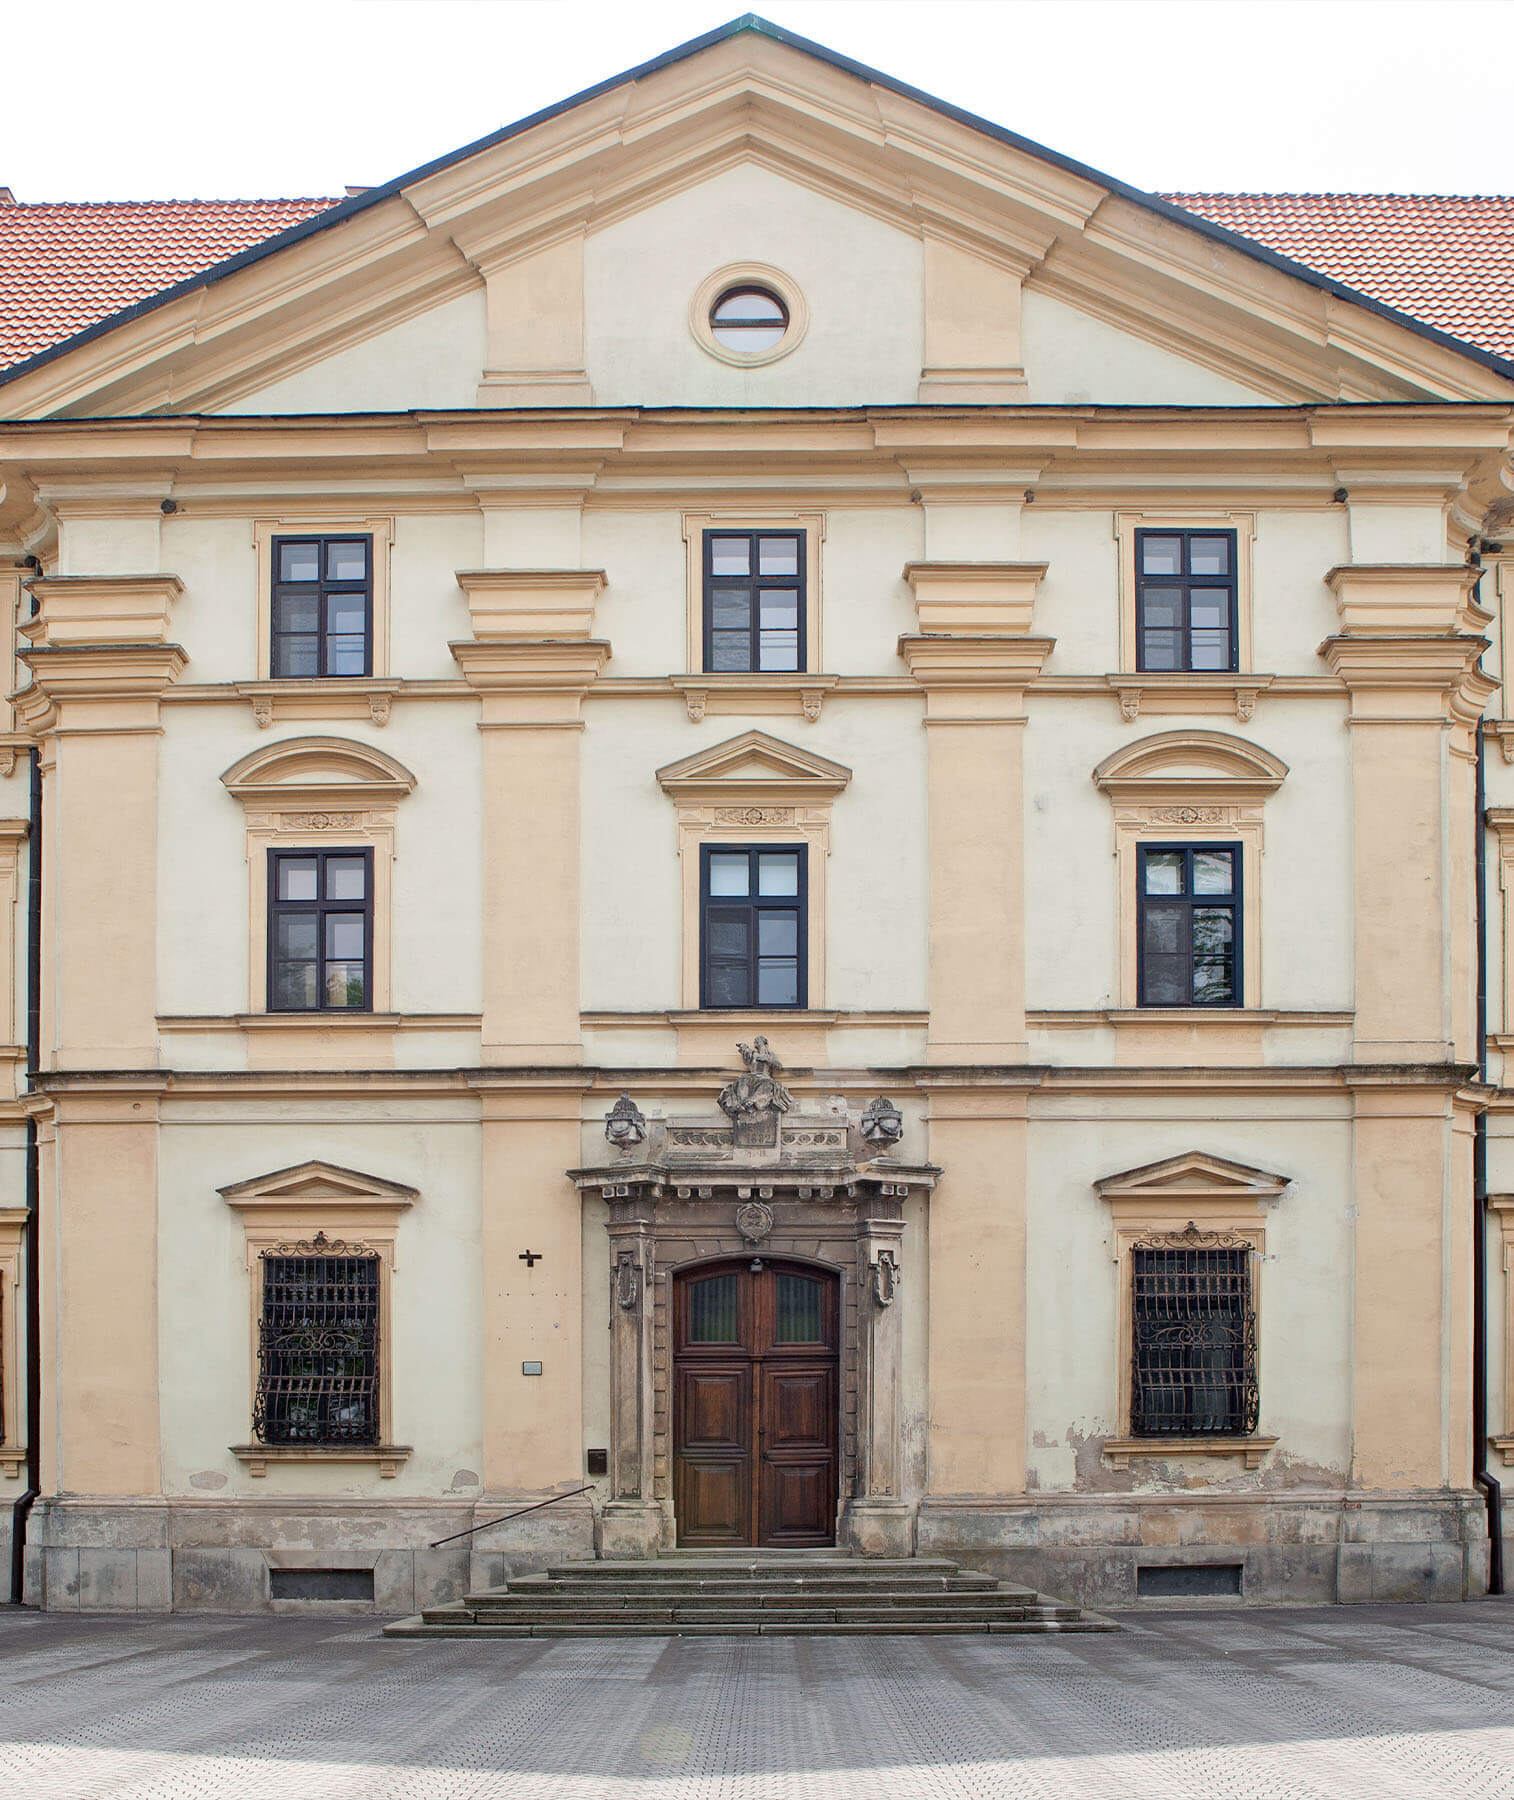 Šaštín - Stráže: Hlavný vstupný portál do kláštora Pavlínov